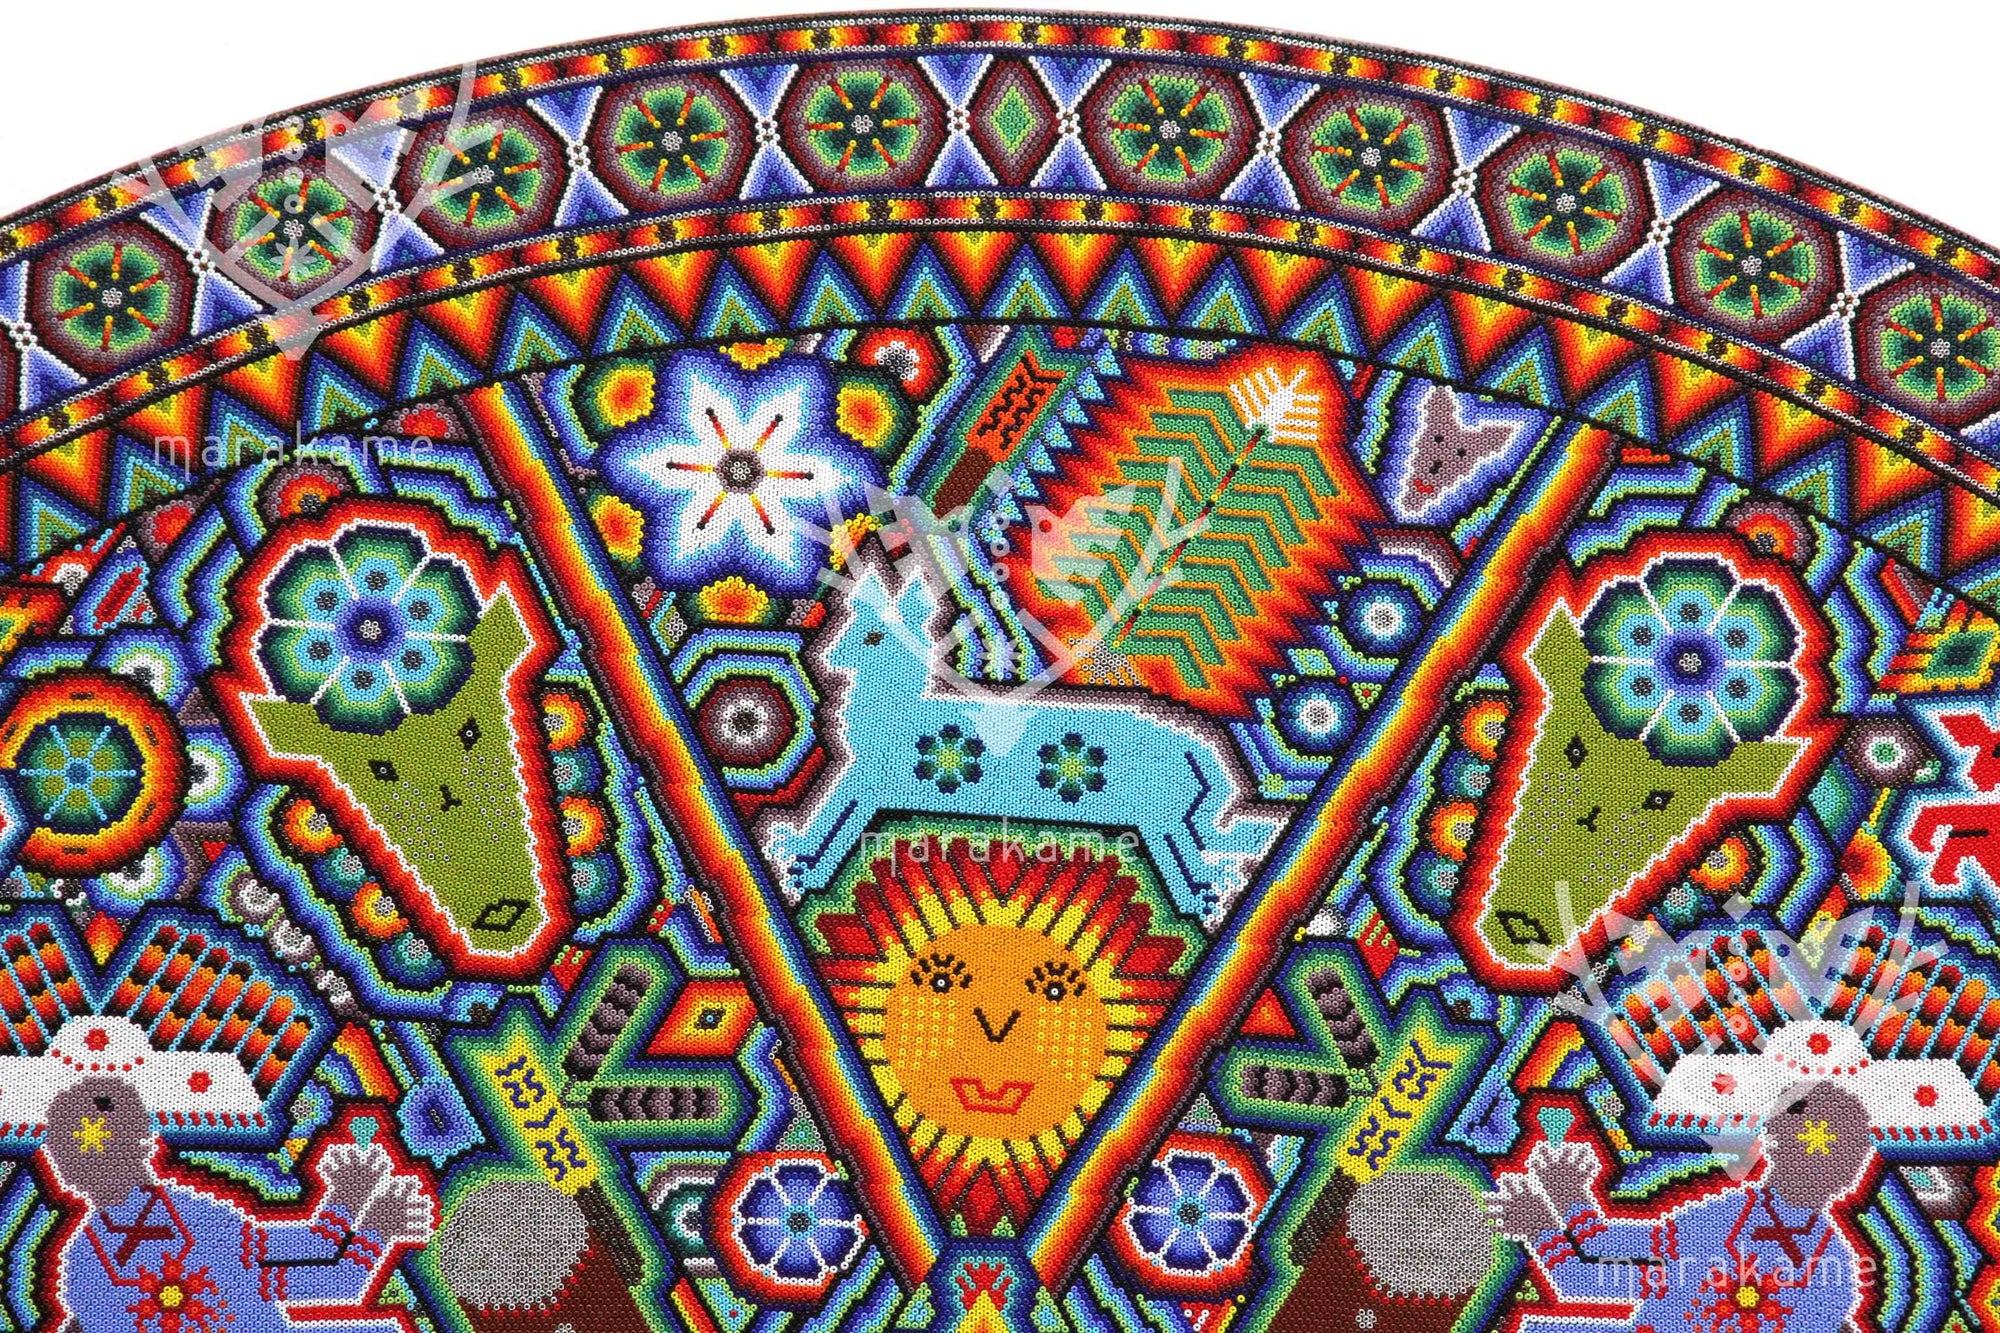 Nierika de Chaquira Cerchio Huichol - Mawaxira - 120 cm. Primo premio alla biennale d'arte di Huichol.